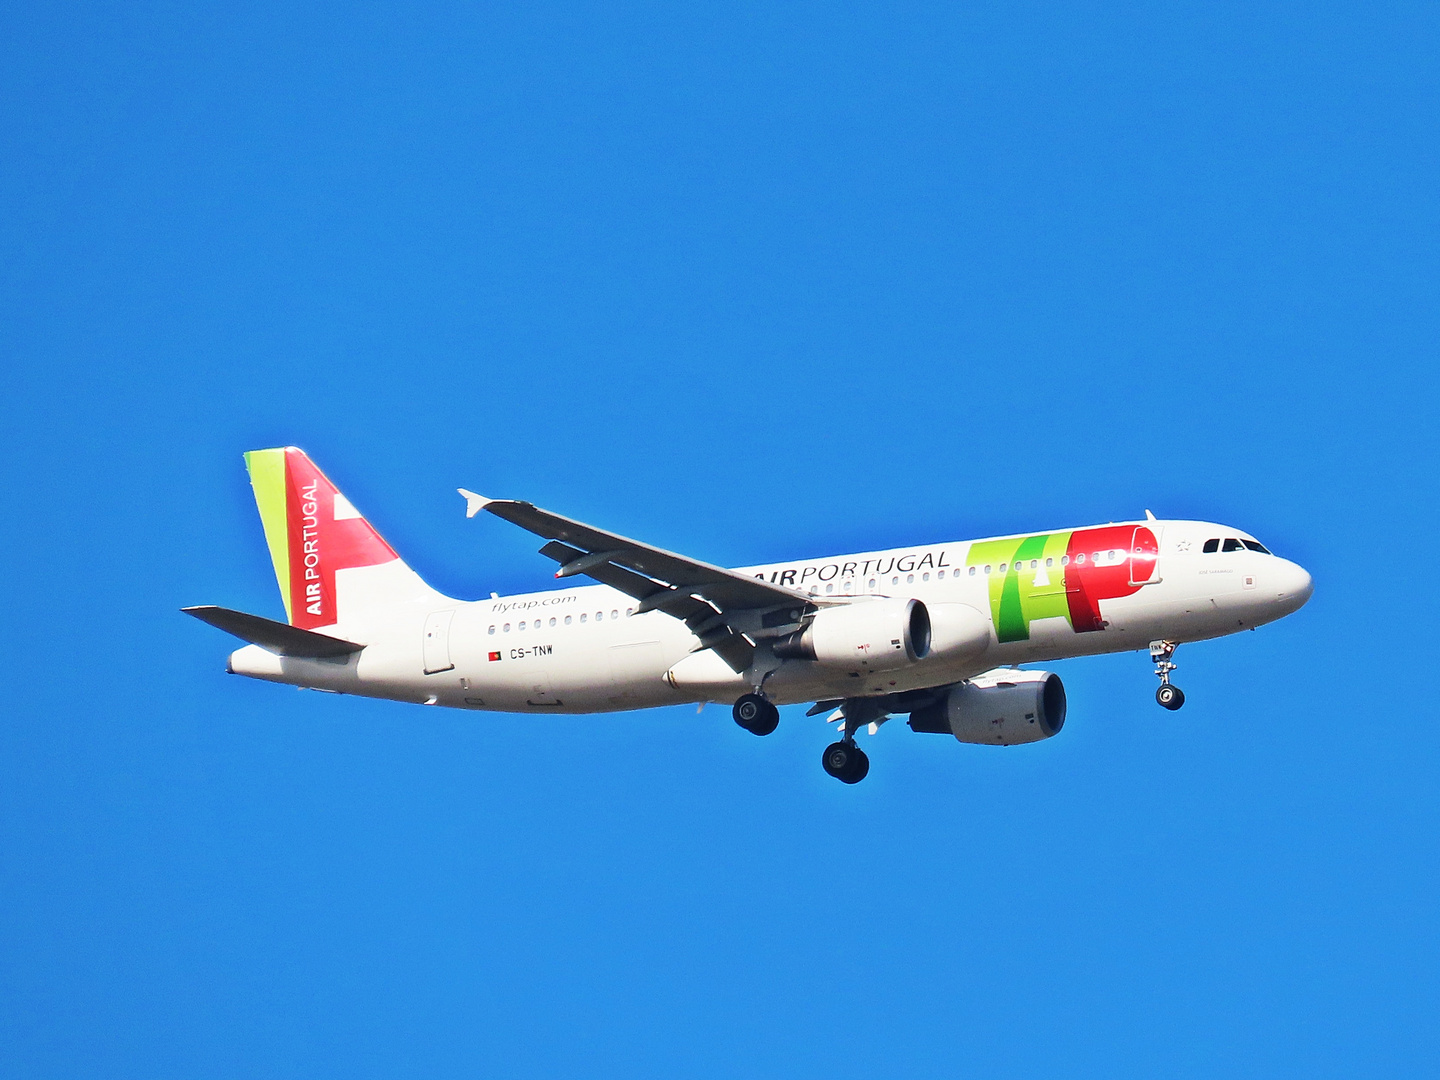 CS-TNW TAP - AIR PORTUGAL AIRBUS A320-200